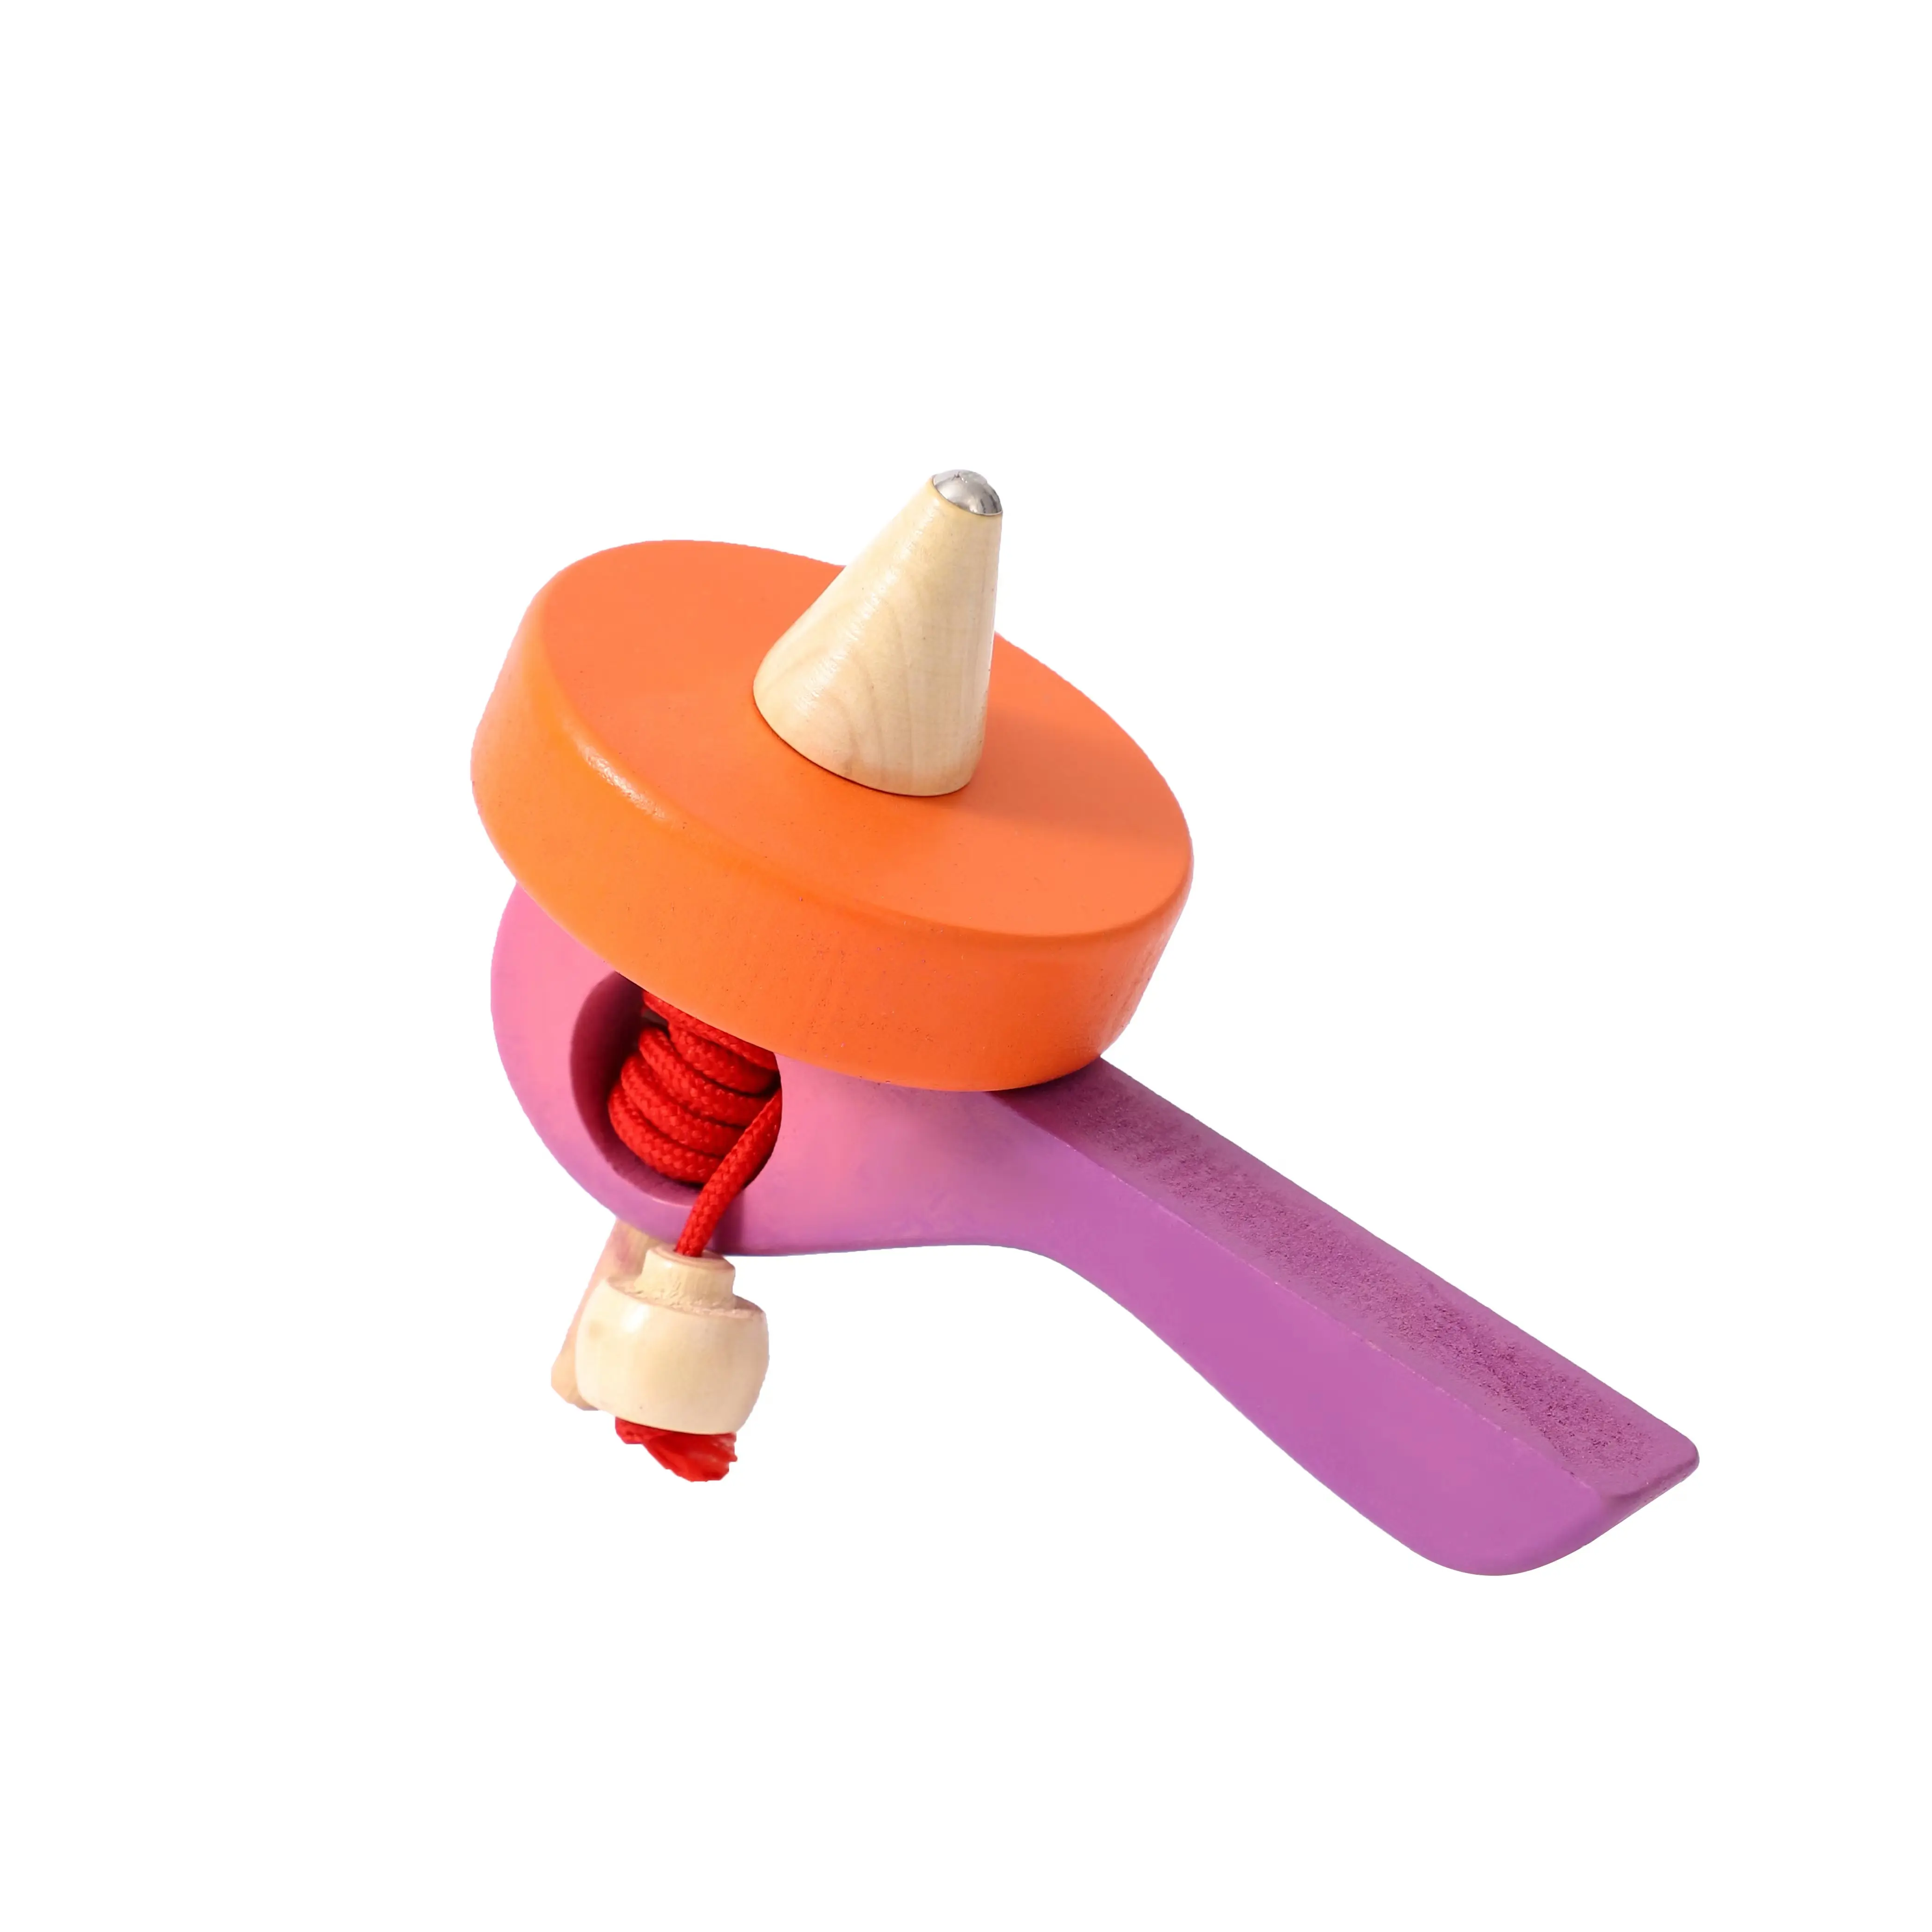 Giroscopio pequeño de madera ecológico para niños, juguetes de entretenimiento de alta calidad, cable colorido, 6